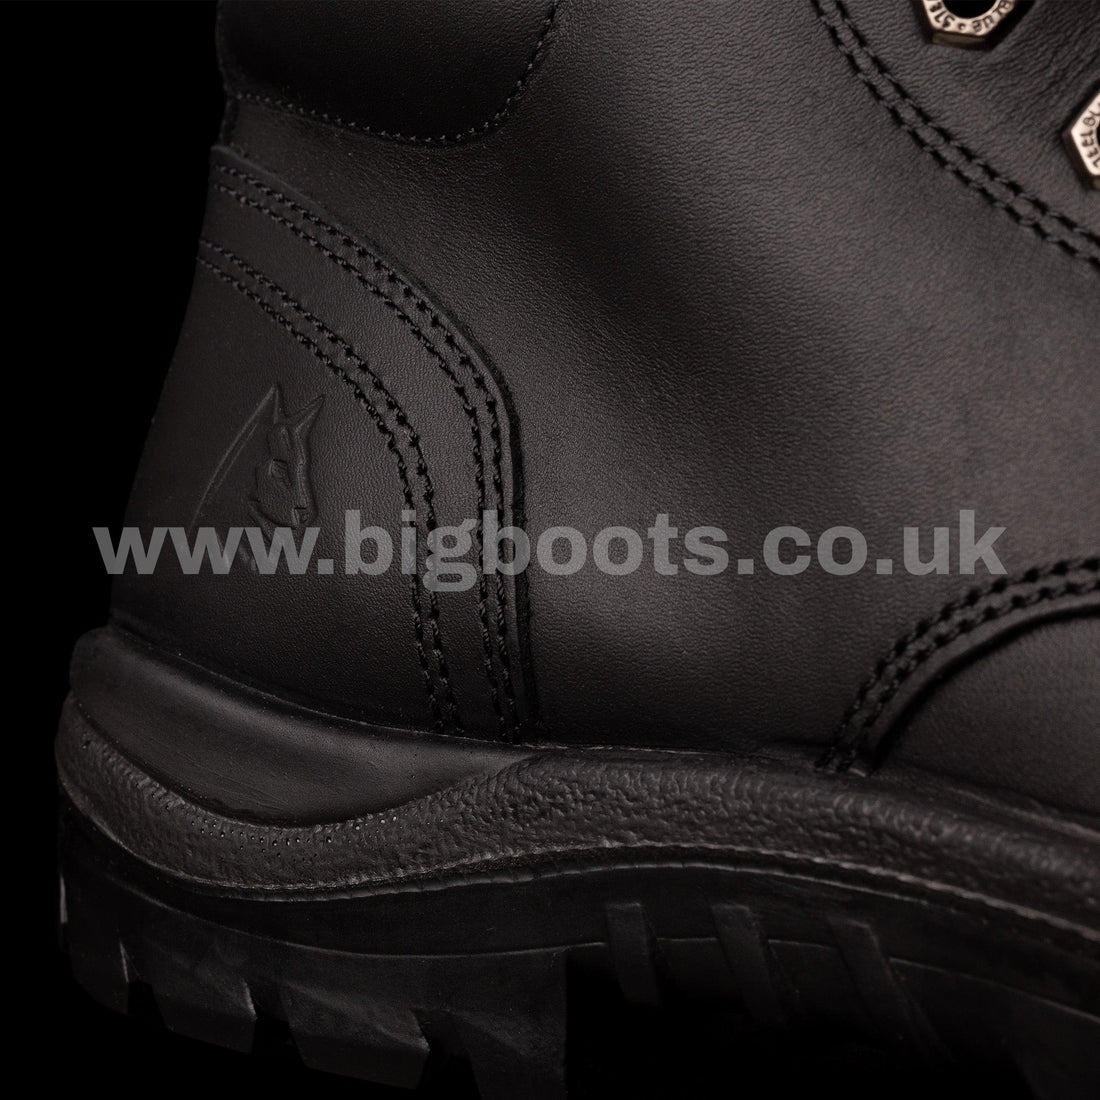 Steel Blue Argyle Met Mens Work Boots - S3 - BIG Boots UK